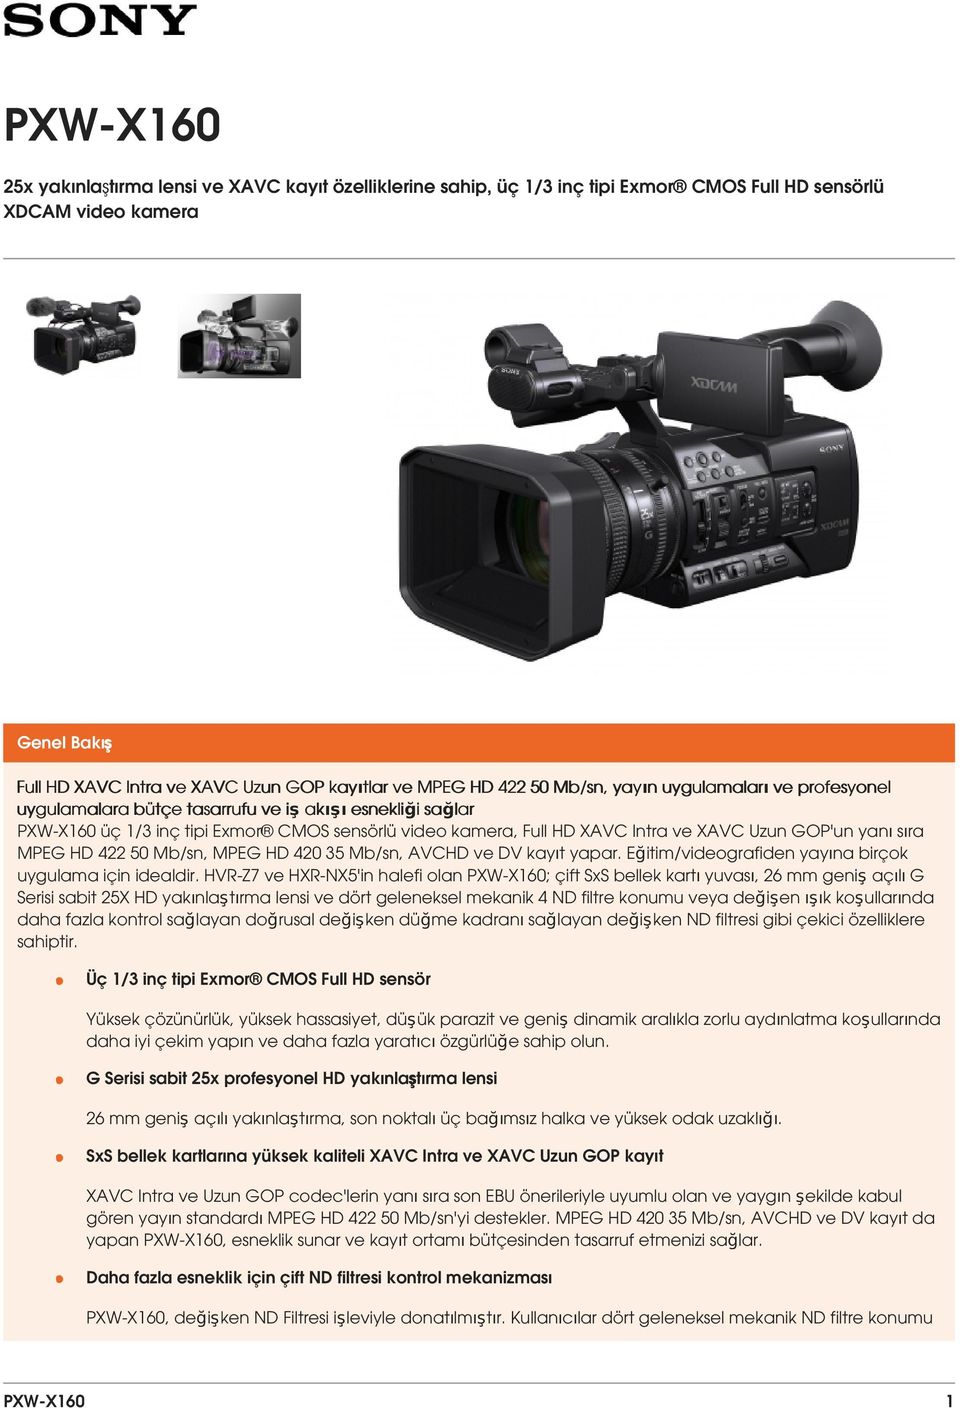 Uzun GOP'un yanı sıra MPEG HD 422 50 Mb/sn, MPEG HD 420 35 Mb/sn, AVCHD ve DV kayıt yapar. Eğitim/videografiden yayına birçok uygulama için idealdir.